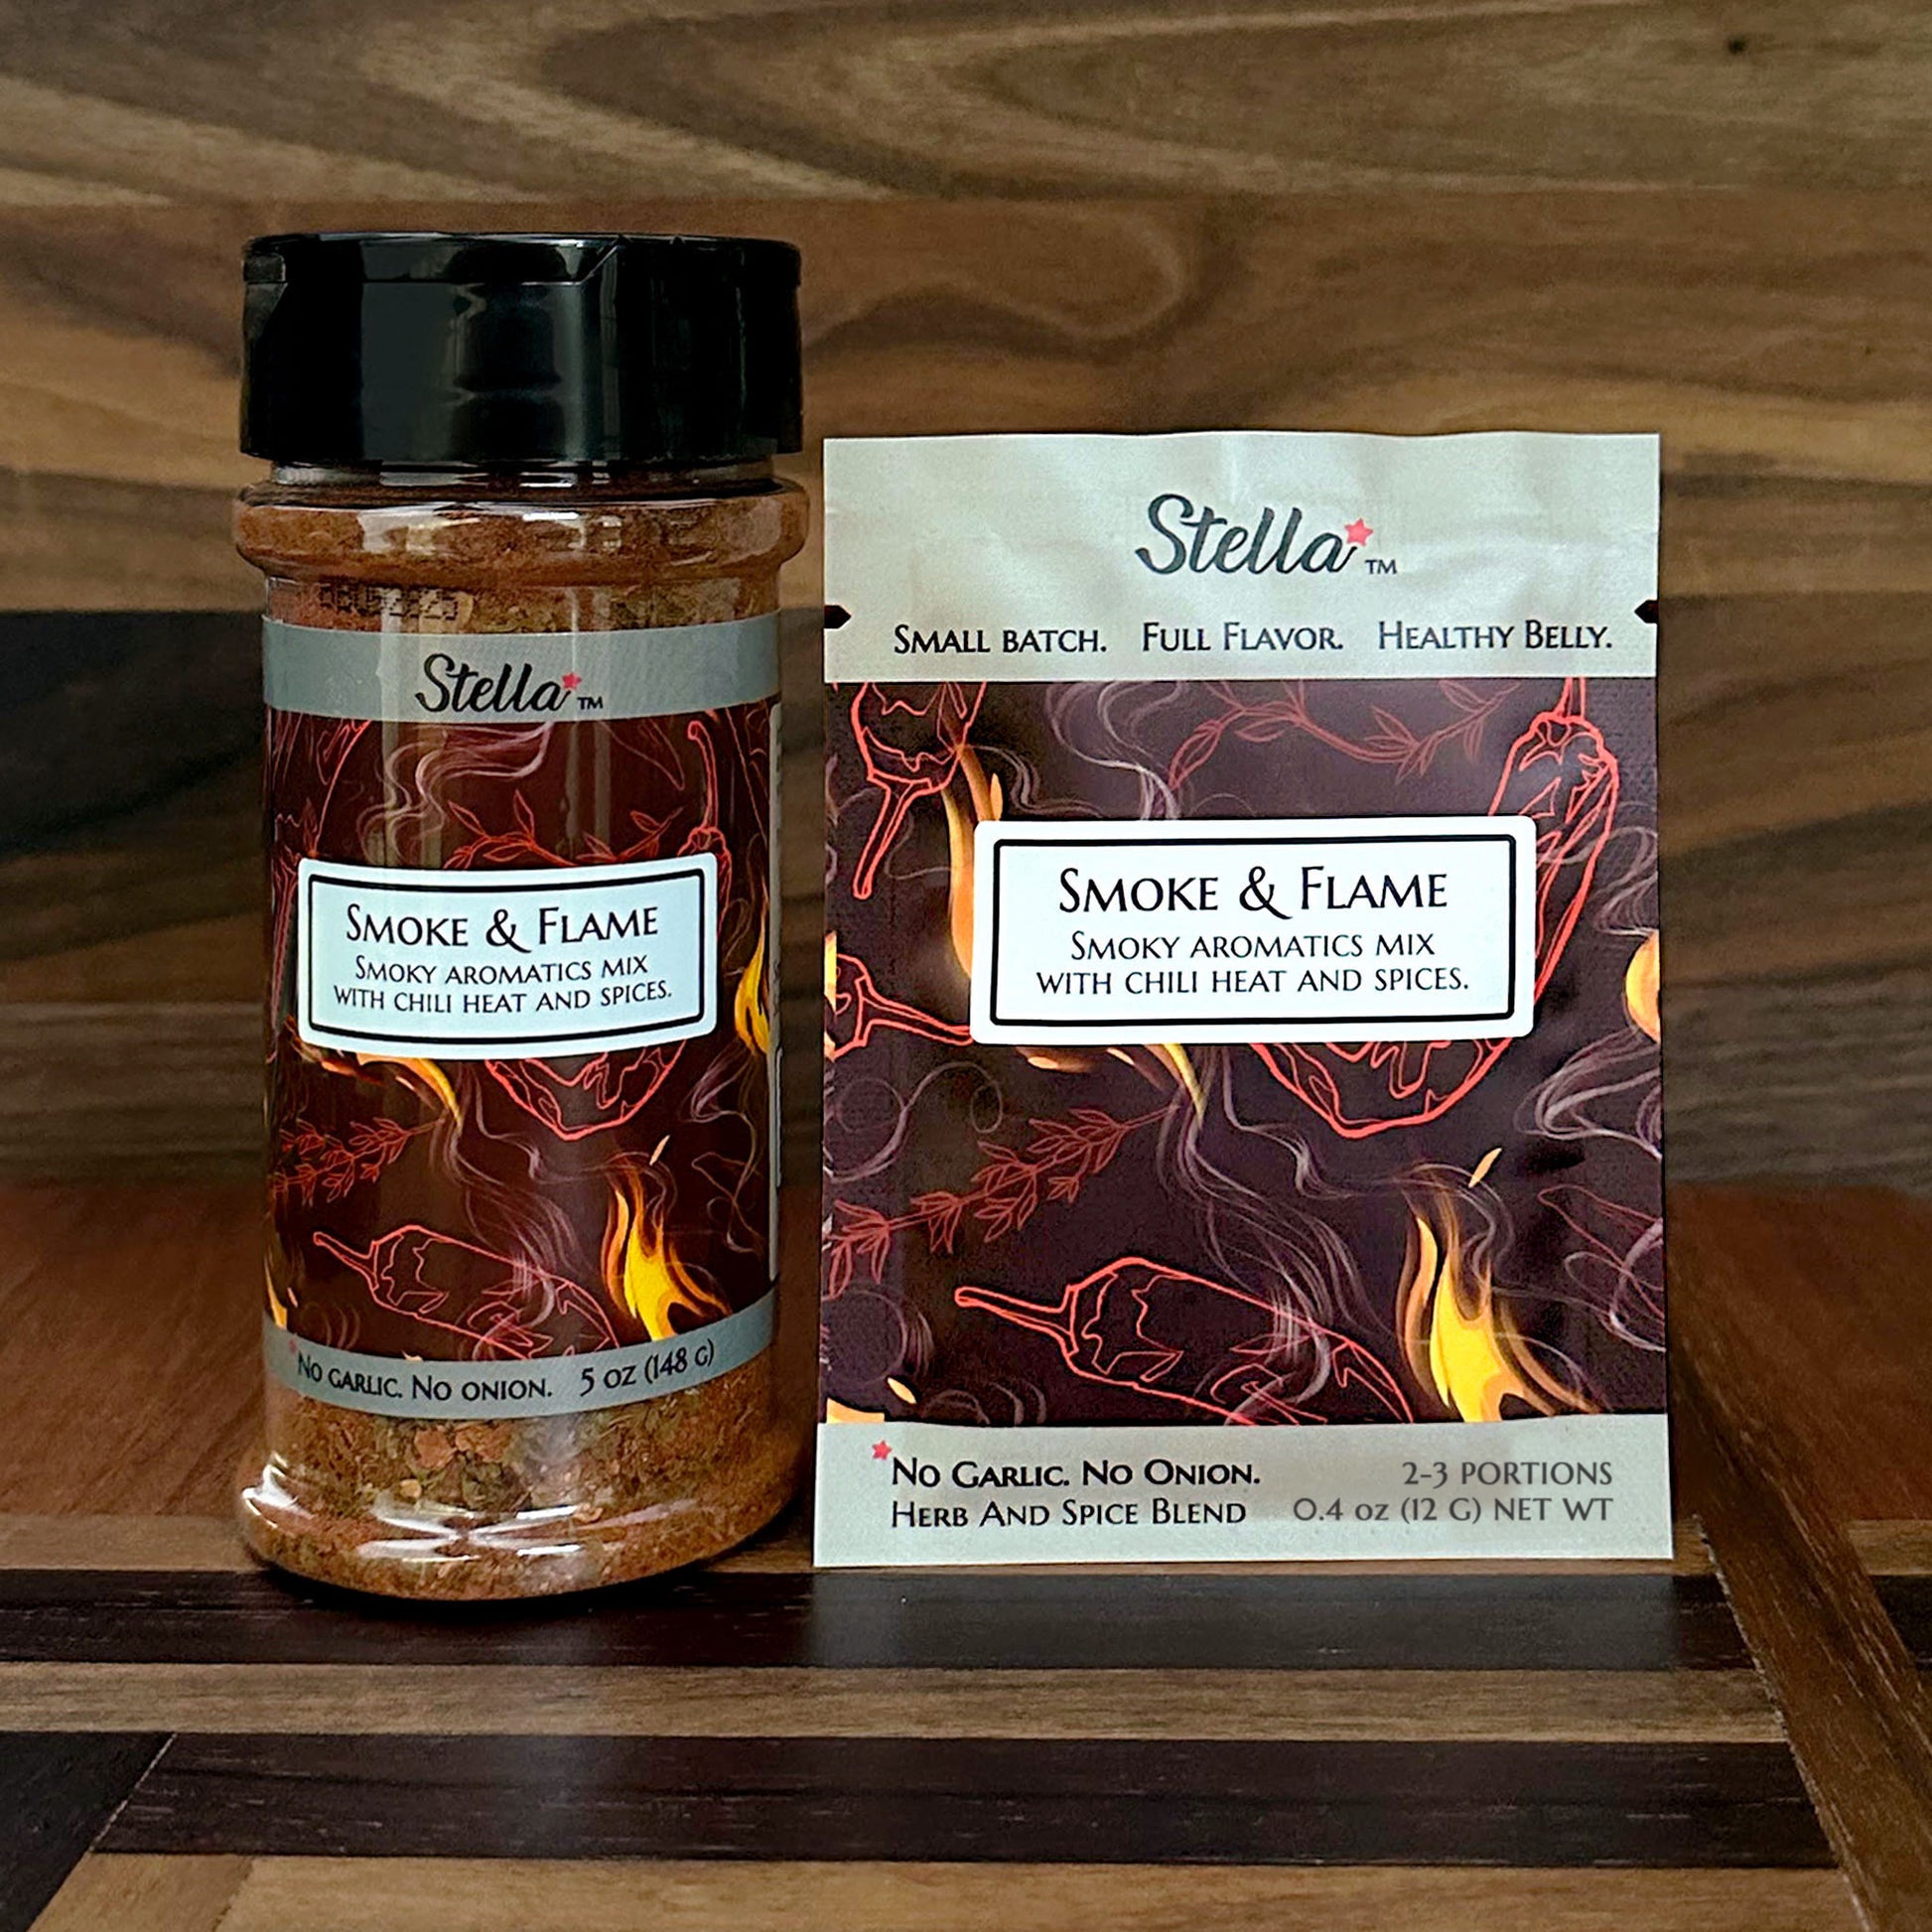 Smoke & Flame Chili & Spice Blend: 5 oz. Bottle, 2-3 Portion Mini